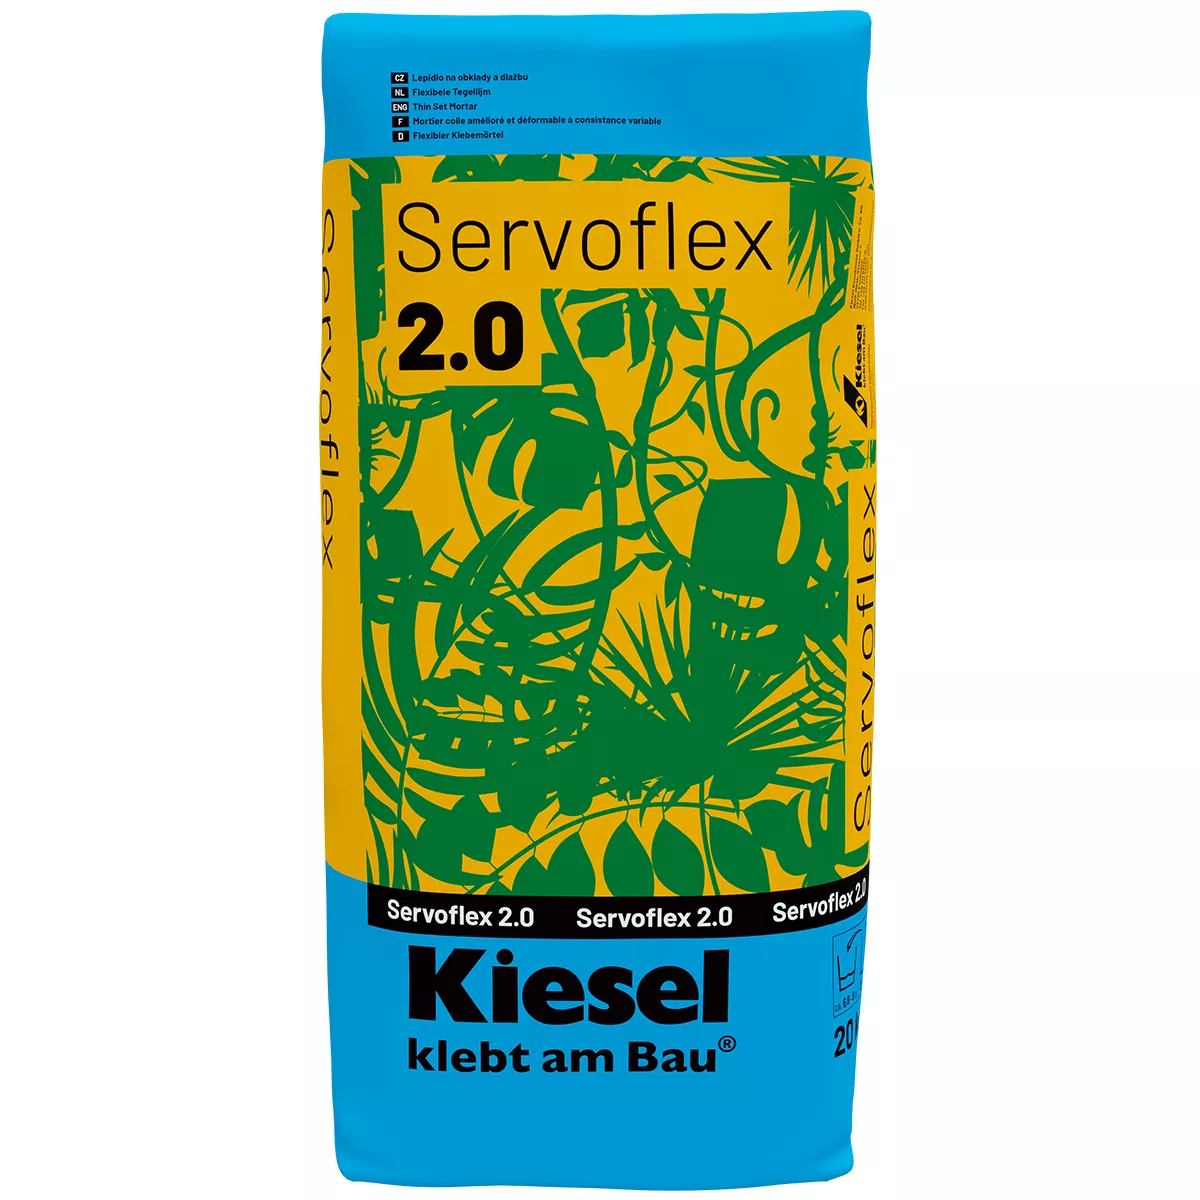 Adesivo flexível para azulejos Kiesel Servoflex 2.0 20 kg